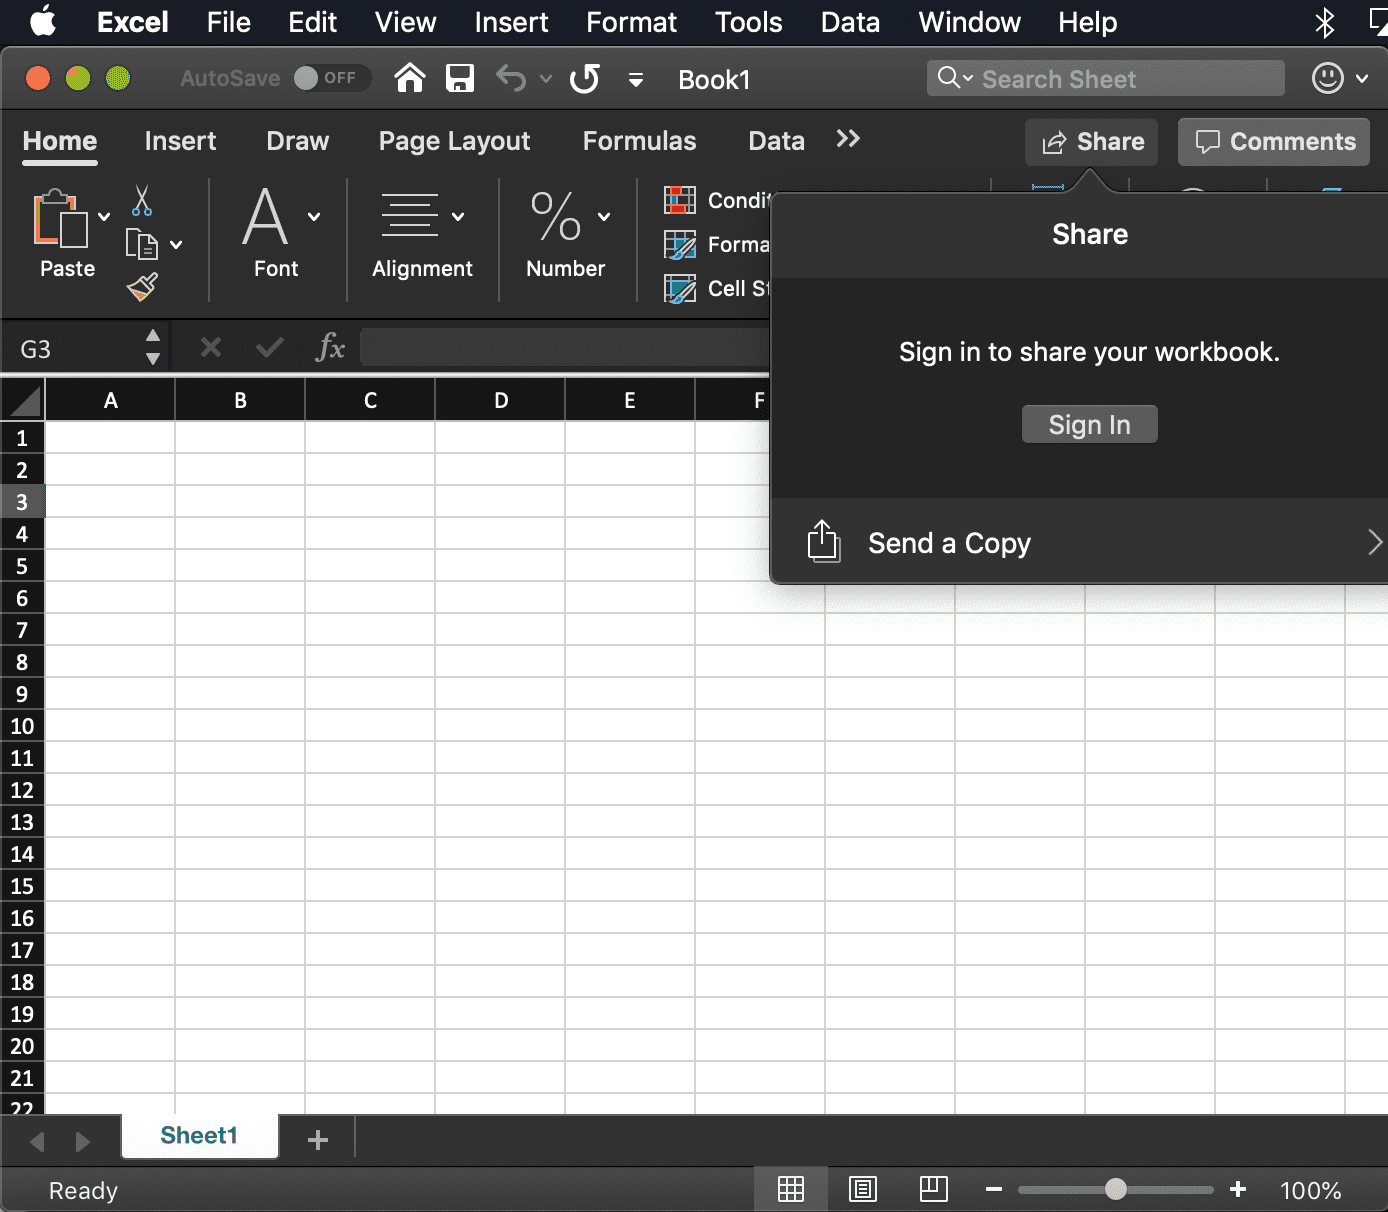 снимок экрана диалогового окна Excel Share